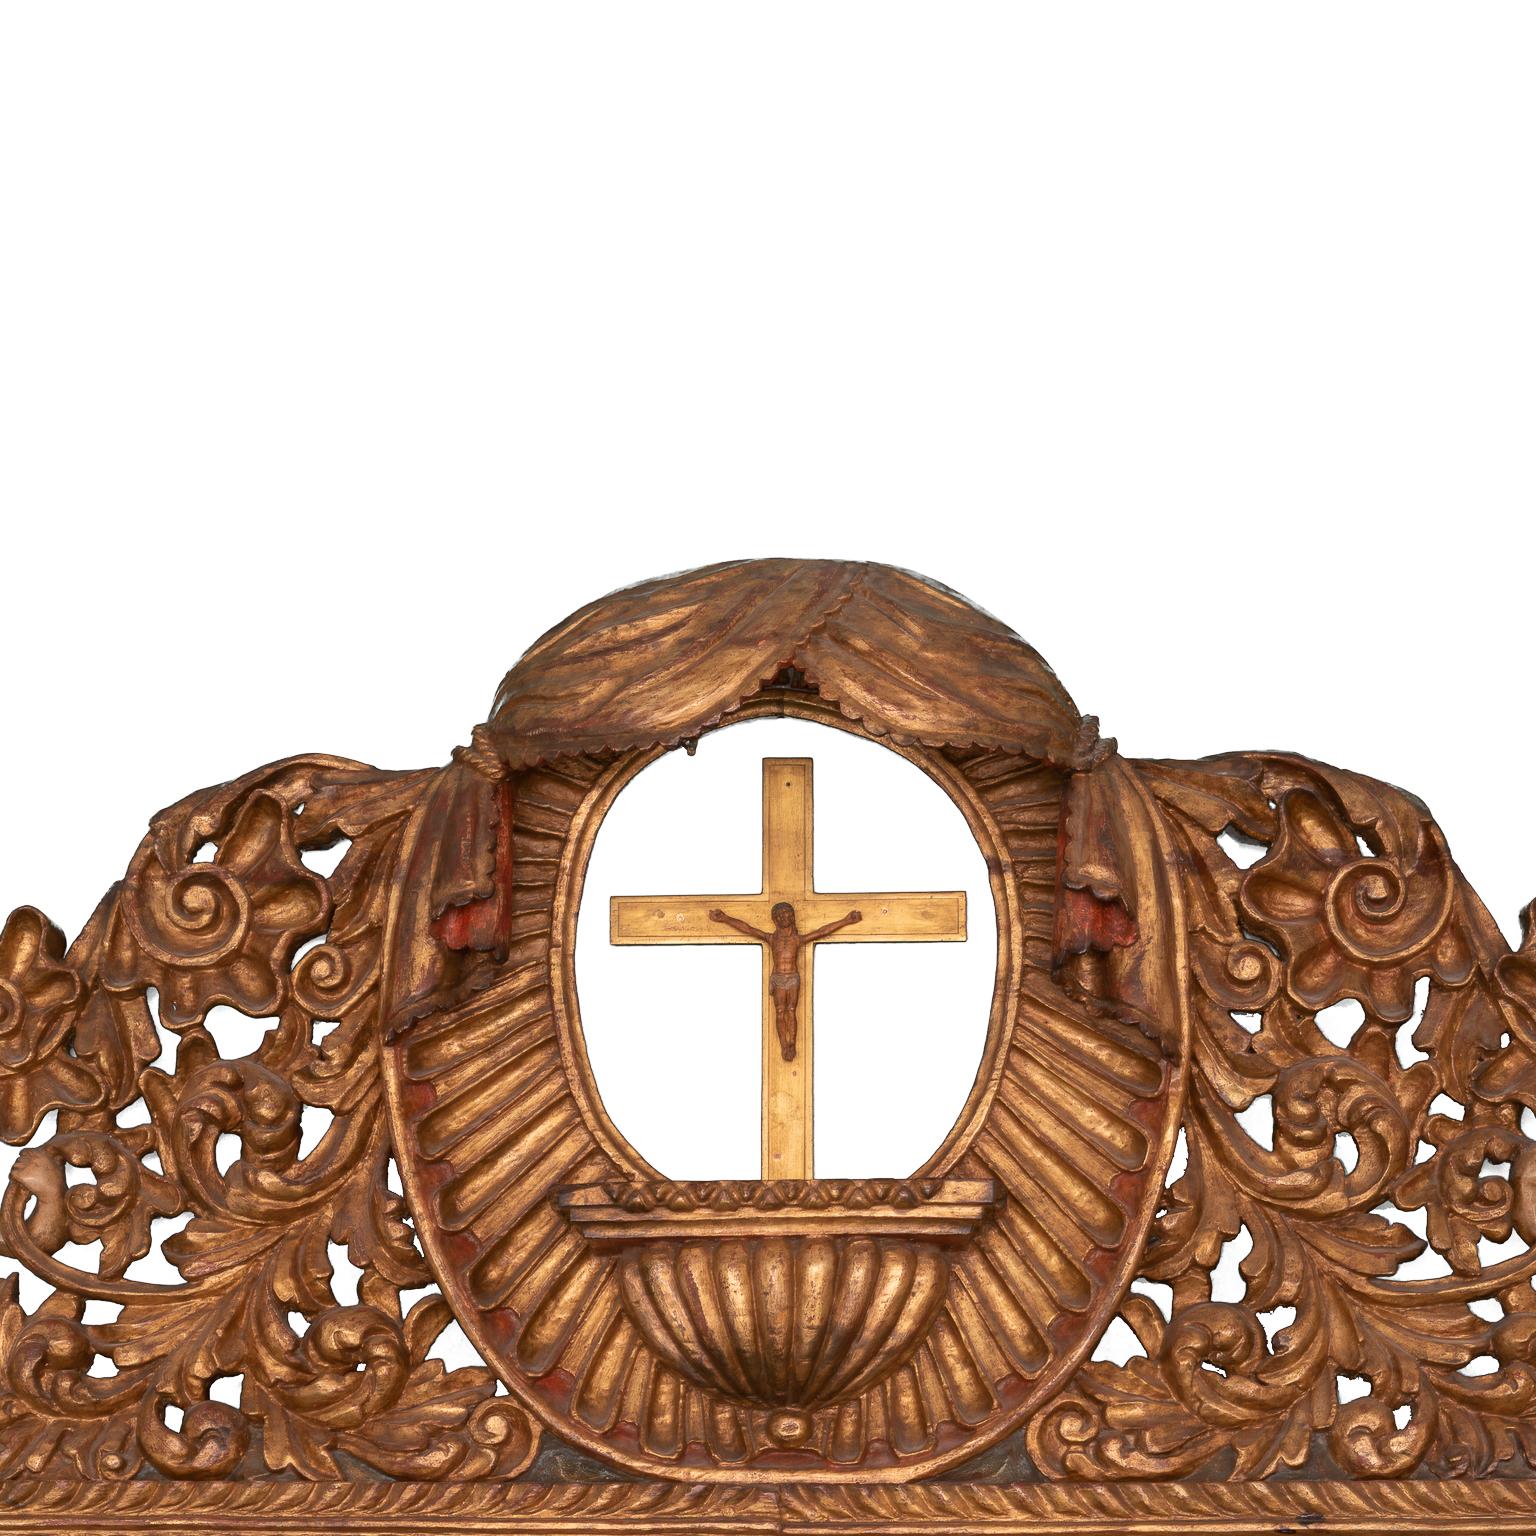 Kopfteil im Barockstil, hergestellt im späten 19. Jahrhundert
mit geschnitzten Darstellungen von Heiligen, Geburt und Jungfrau.